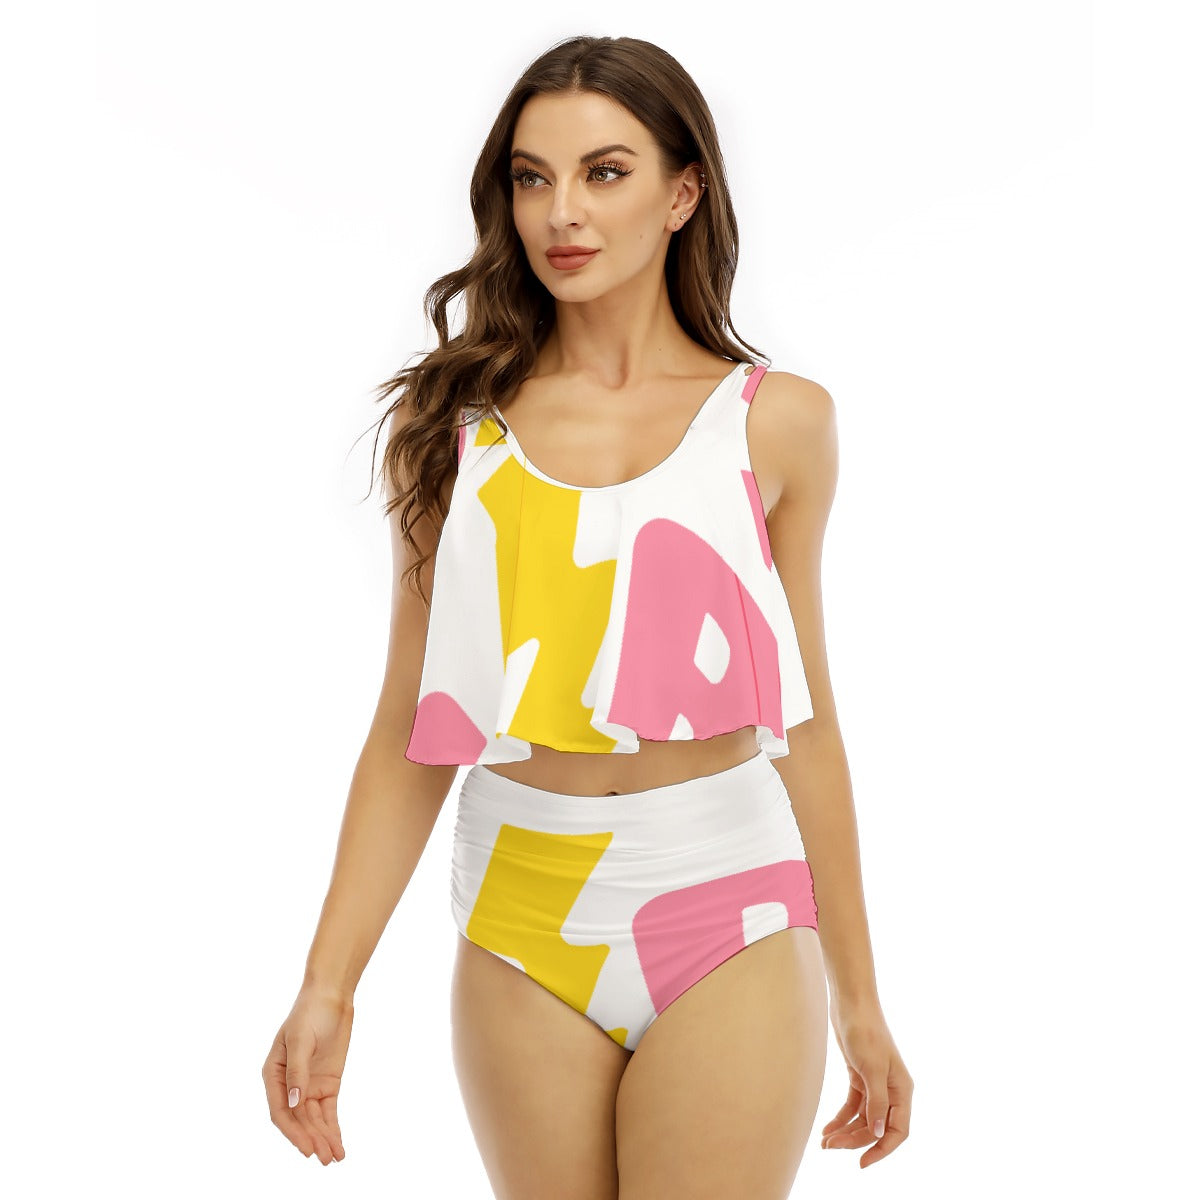 All-Over Print Women's Ruffled Vest Bikini Swimsuit